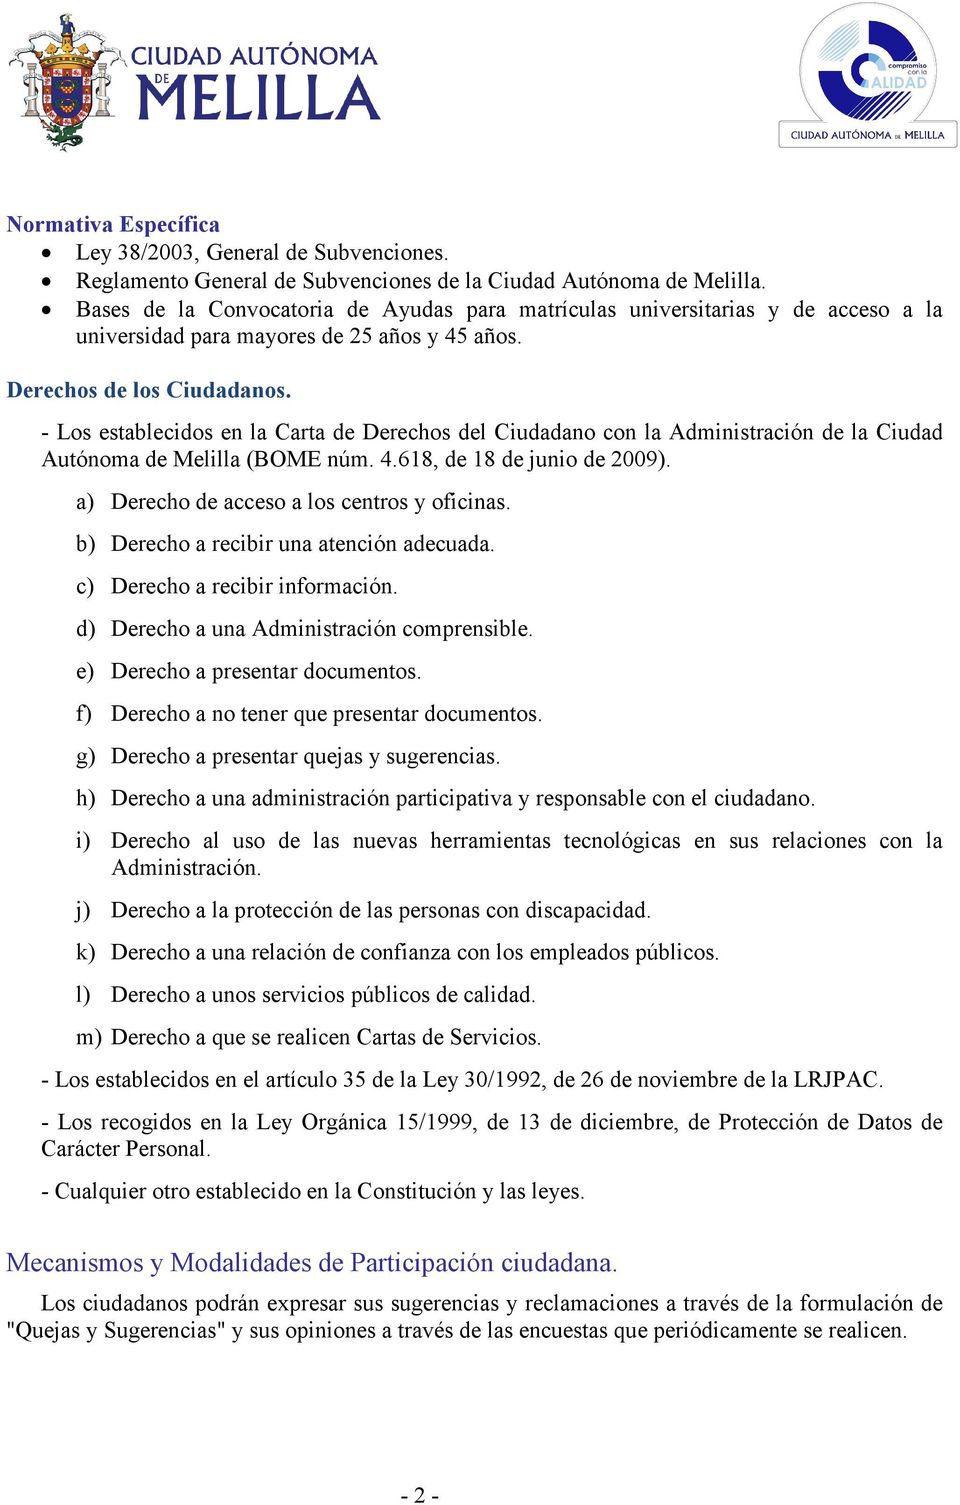 - Los establecidos en la Carta de Derechos del Ciudadano con la Administración de la Ciudad Autónoma de Melilla (BOME núm. 4.618, de 18 de junio de 2009).